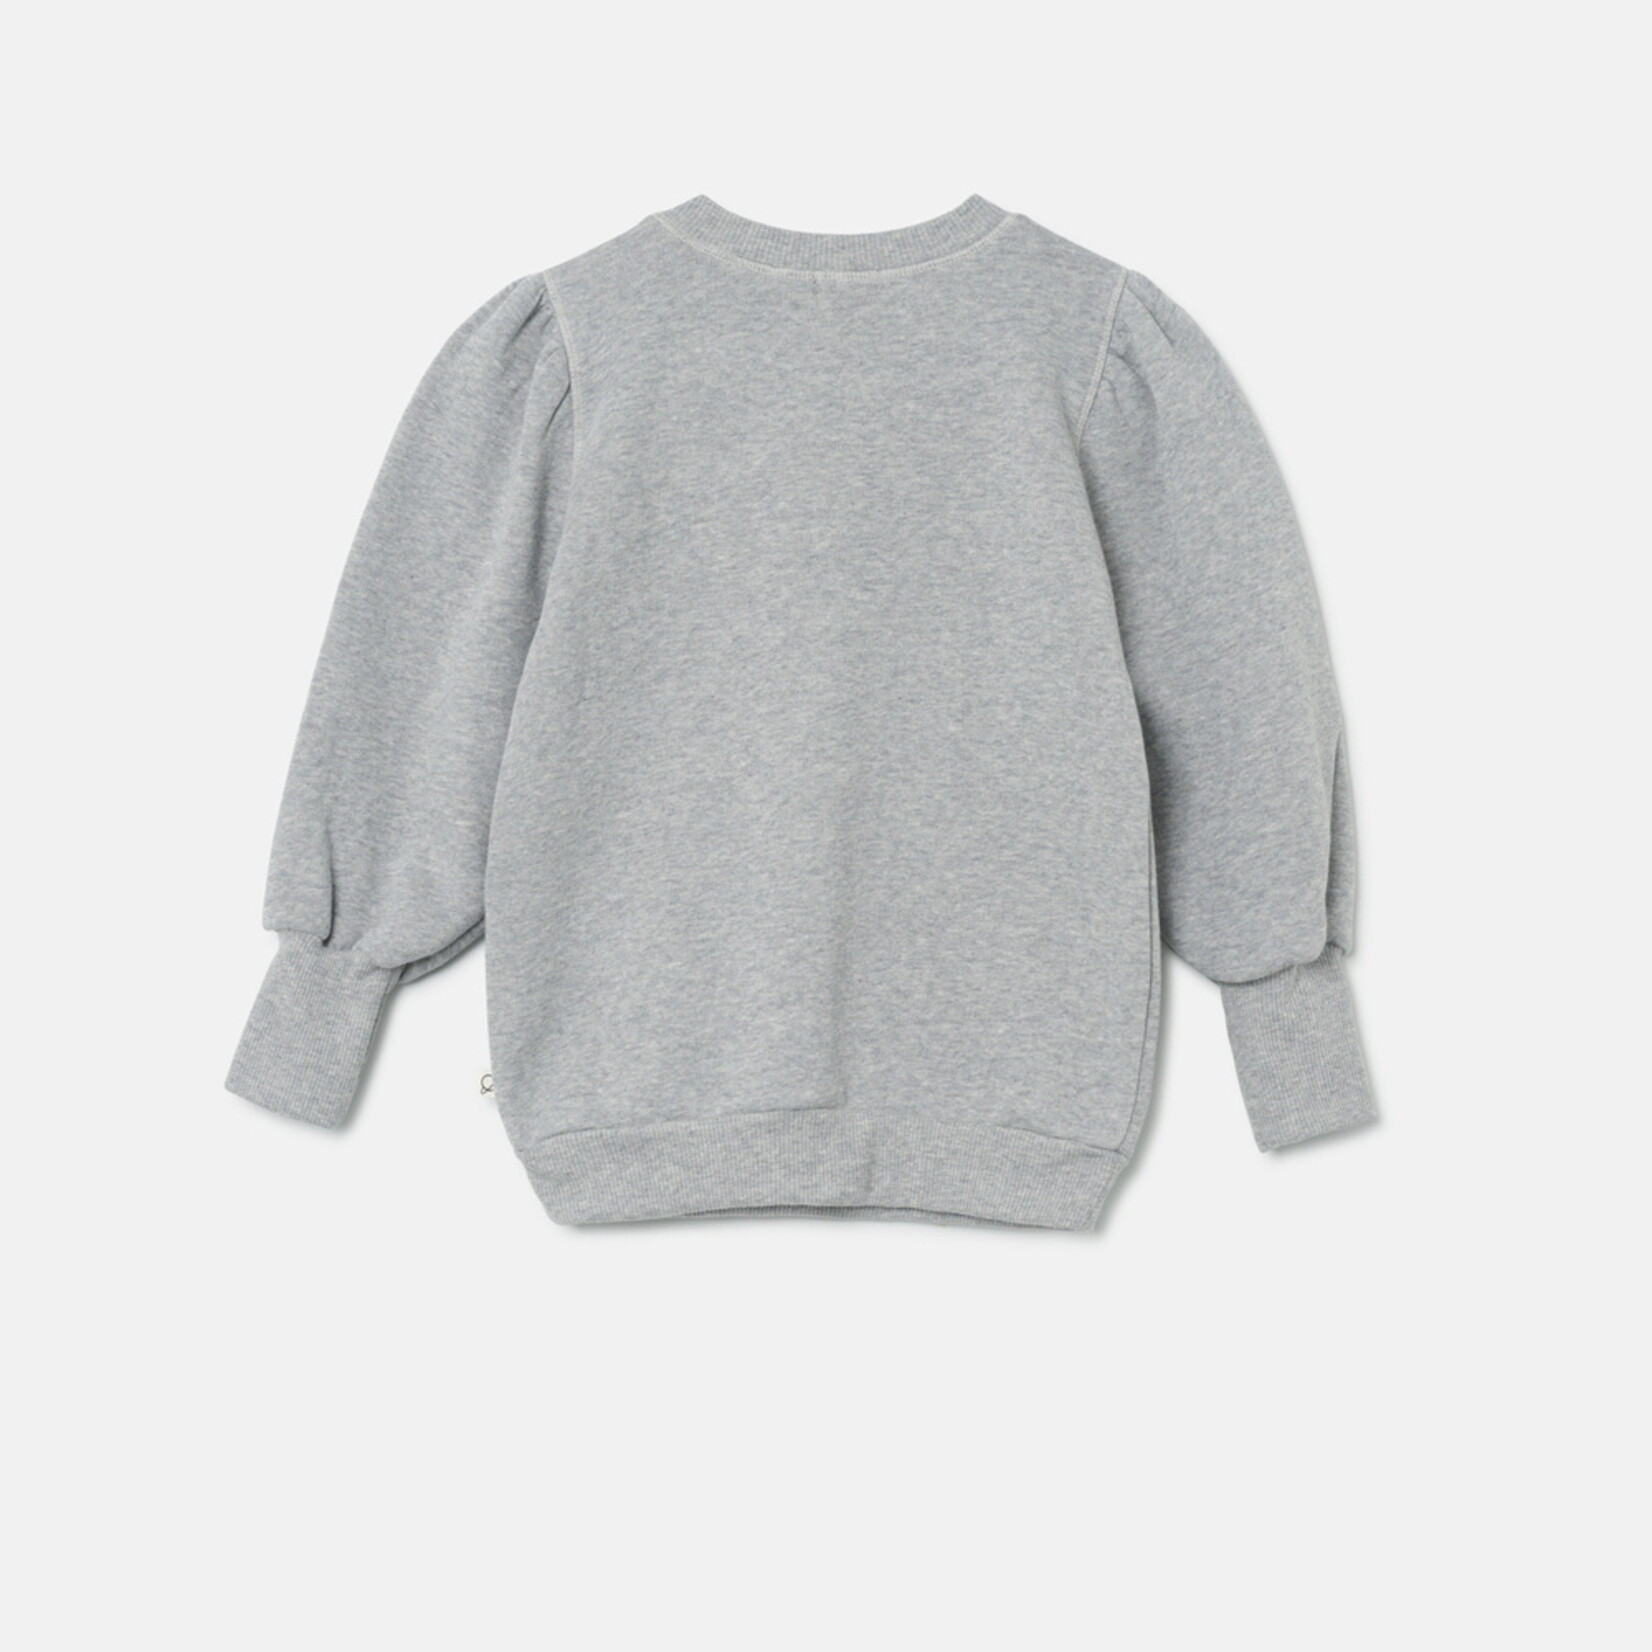 My Little Cozmo Organic puff sweatshirt - grey